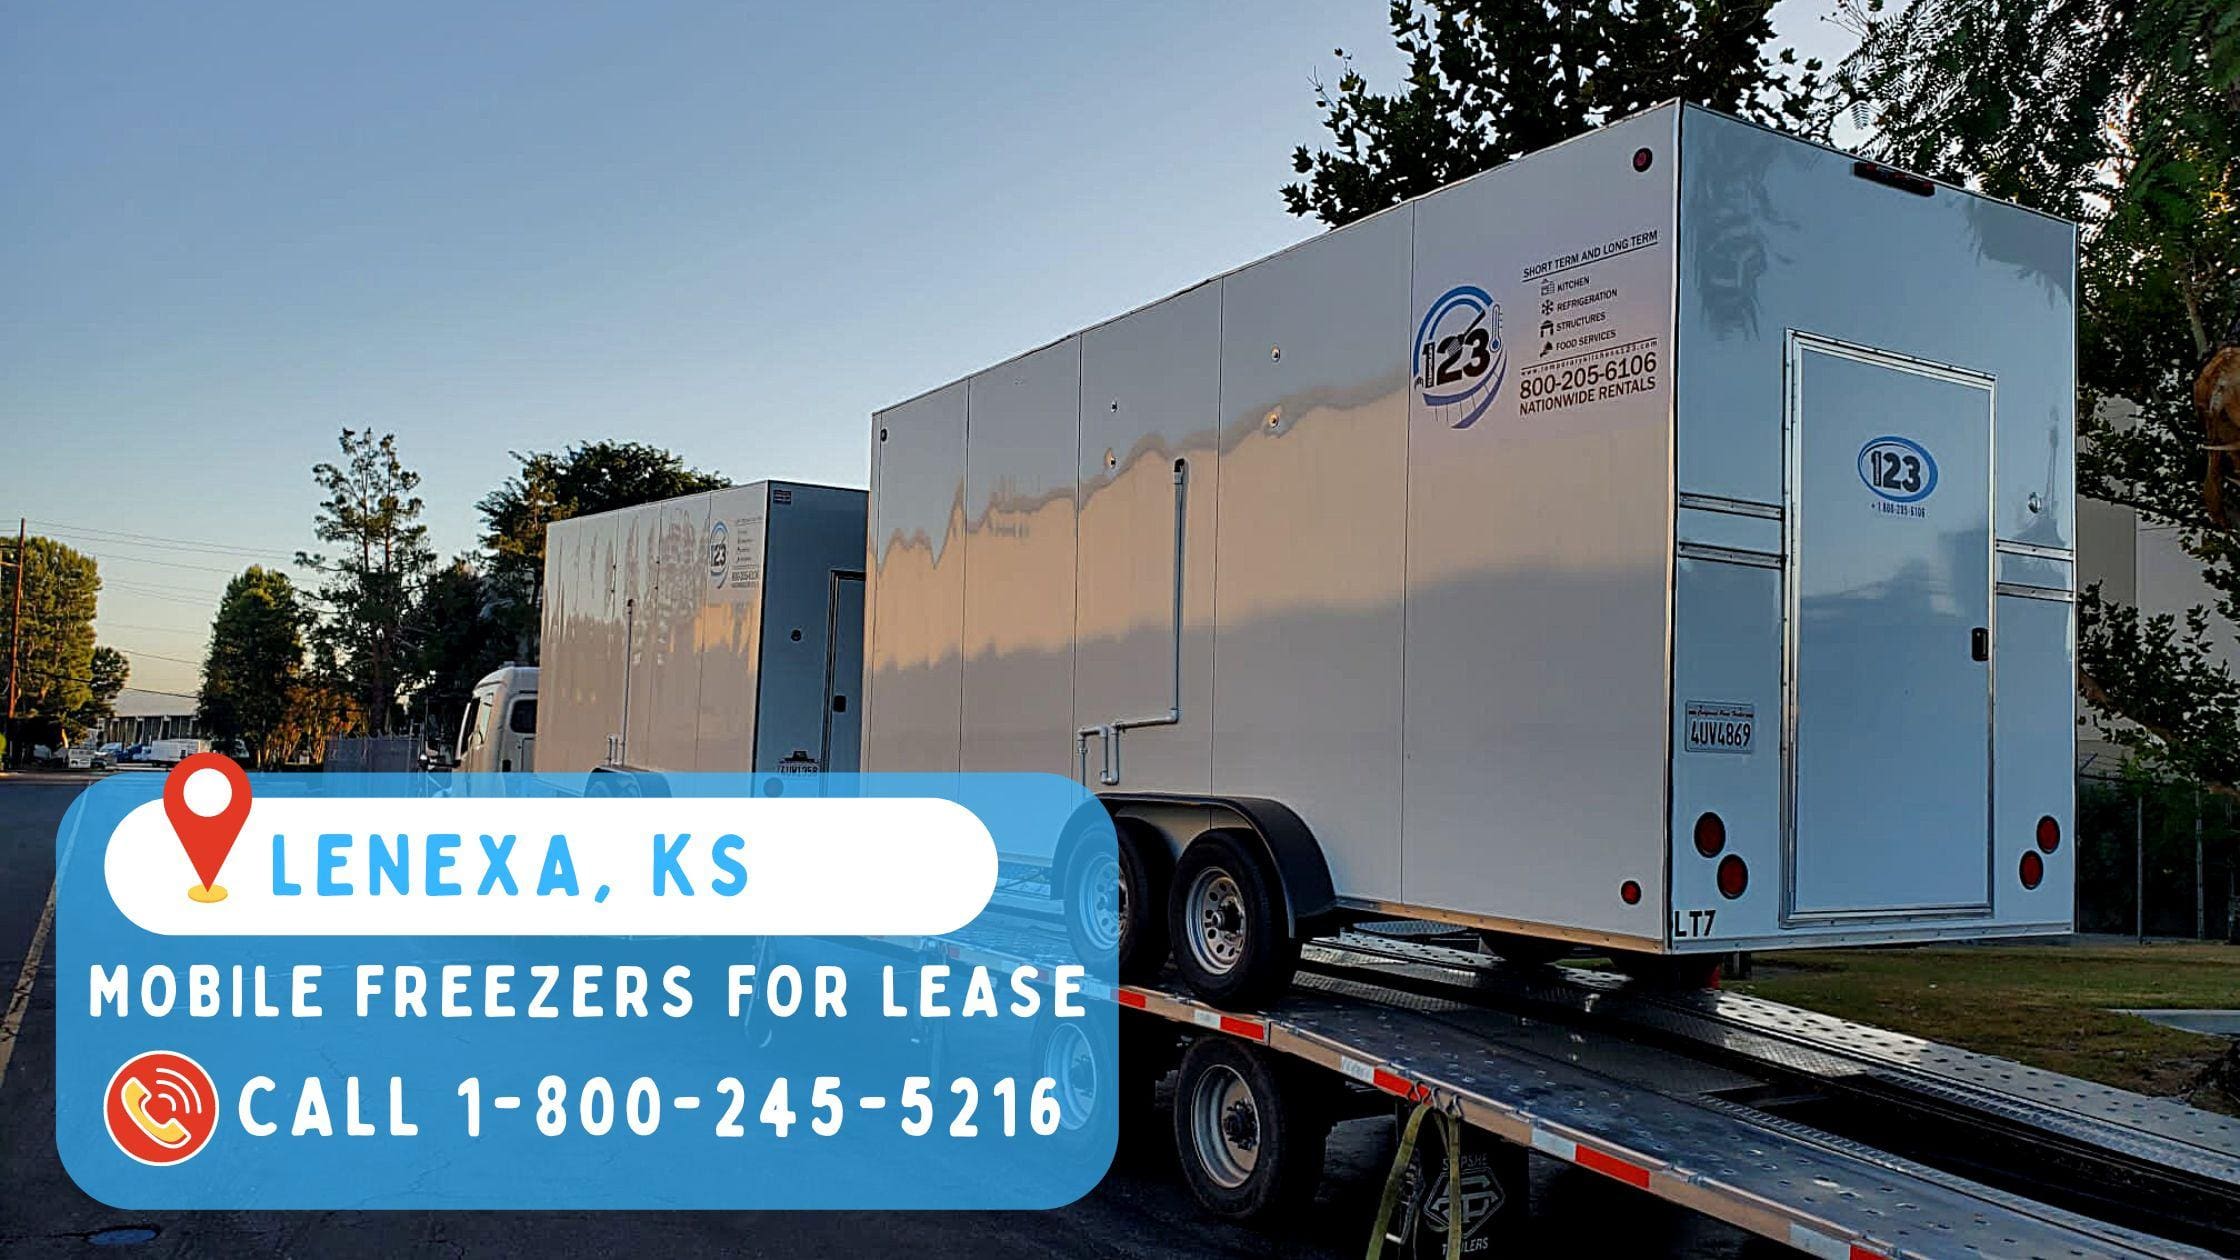 Mobile Freezers for Lease in Lenexa, KS